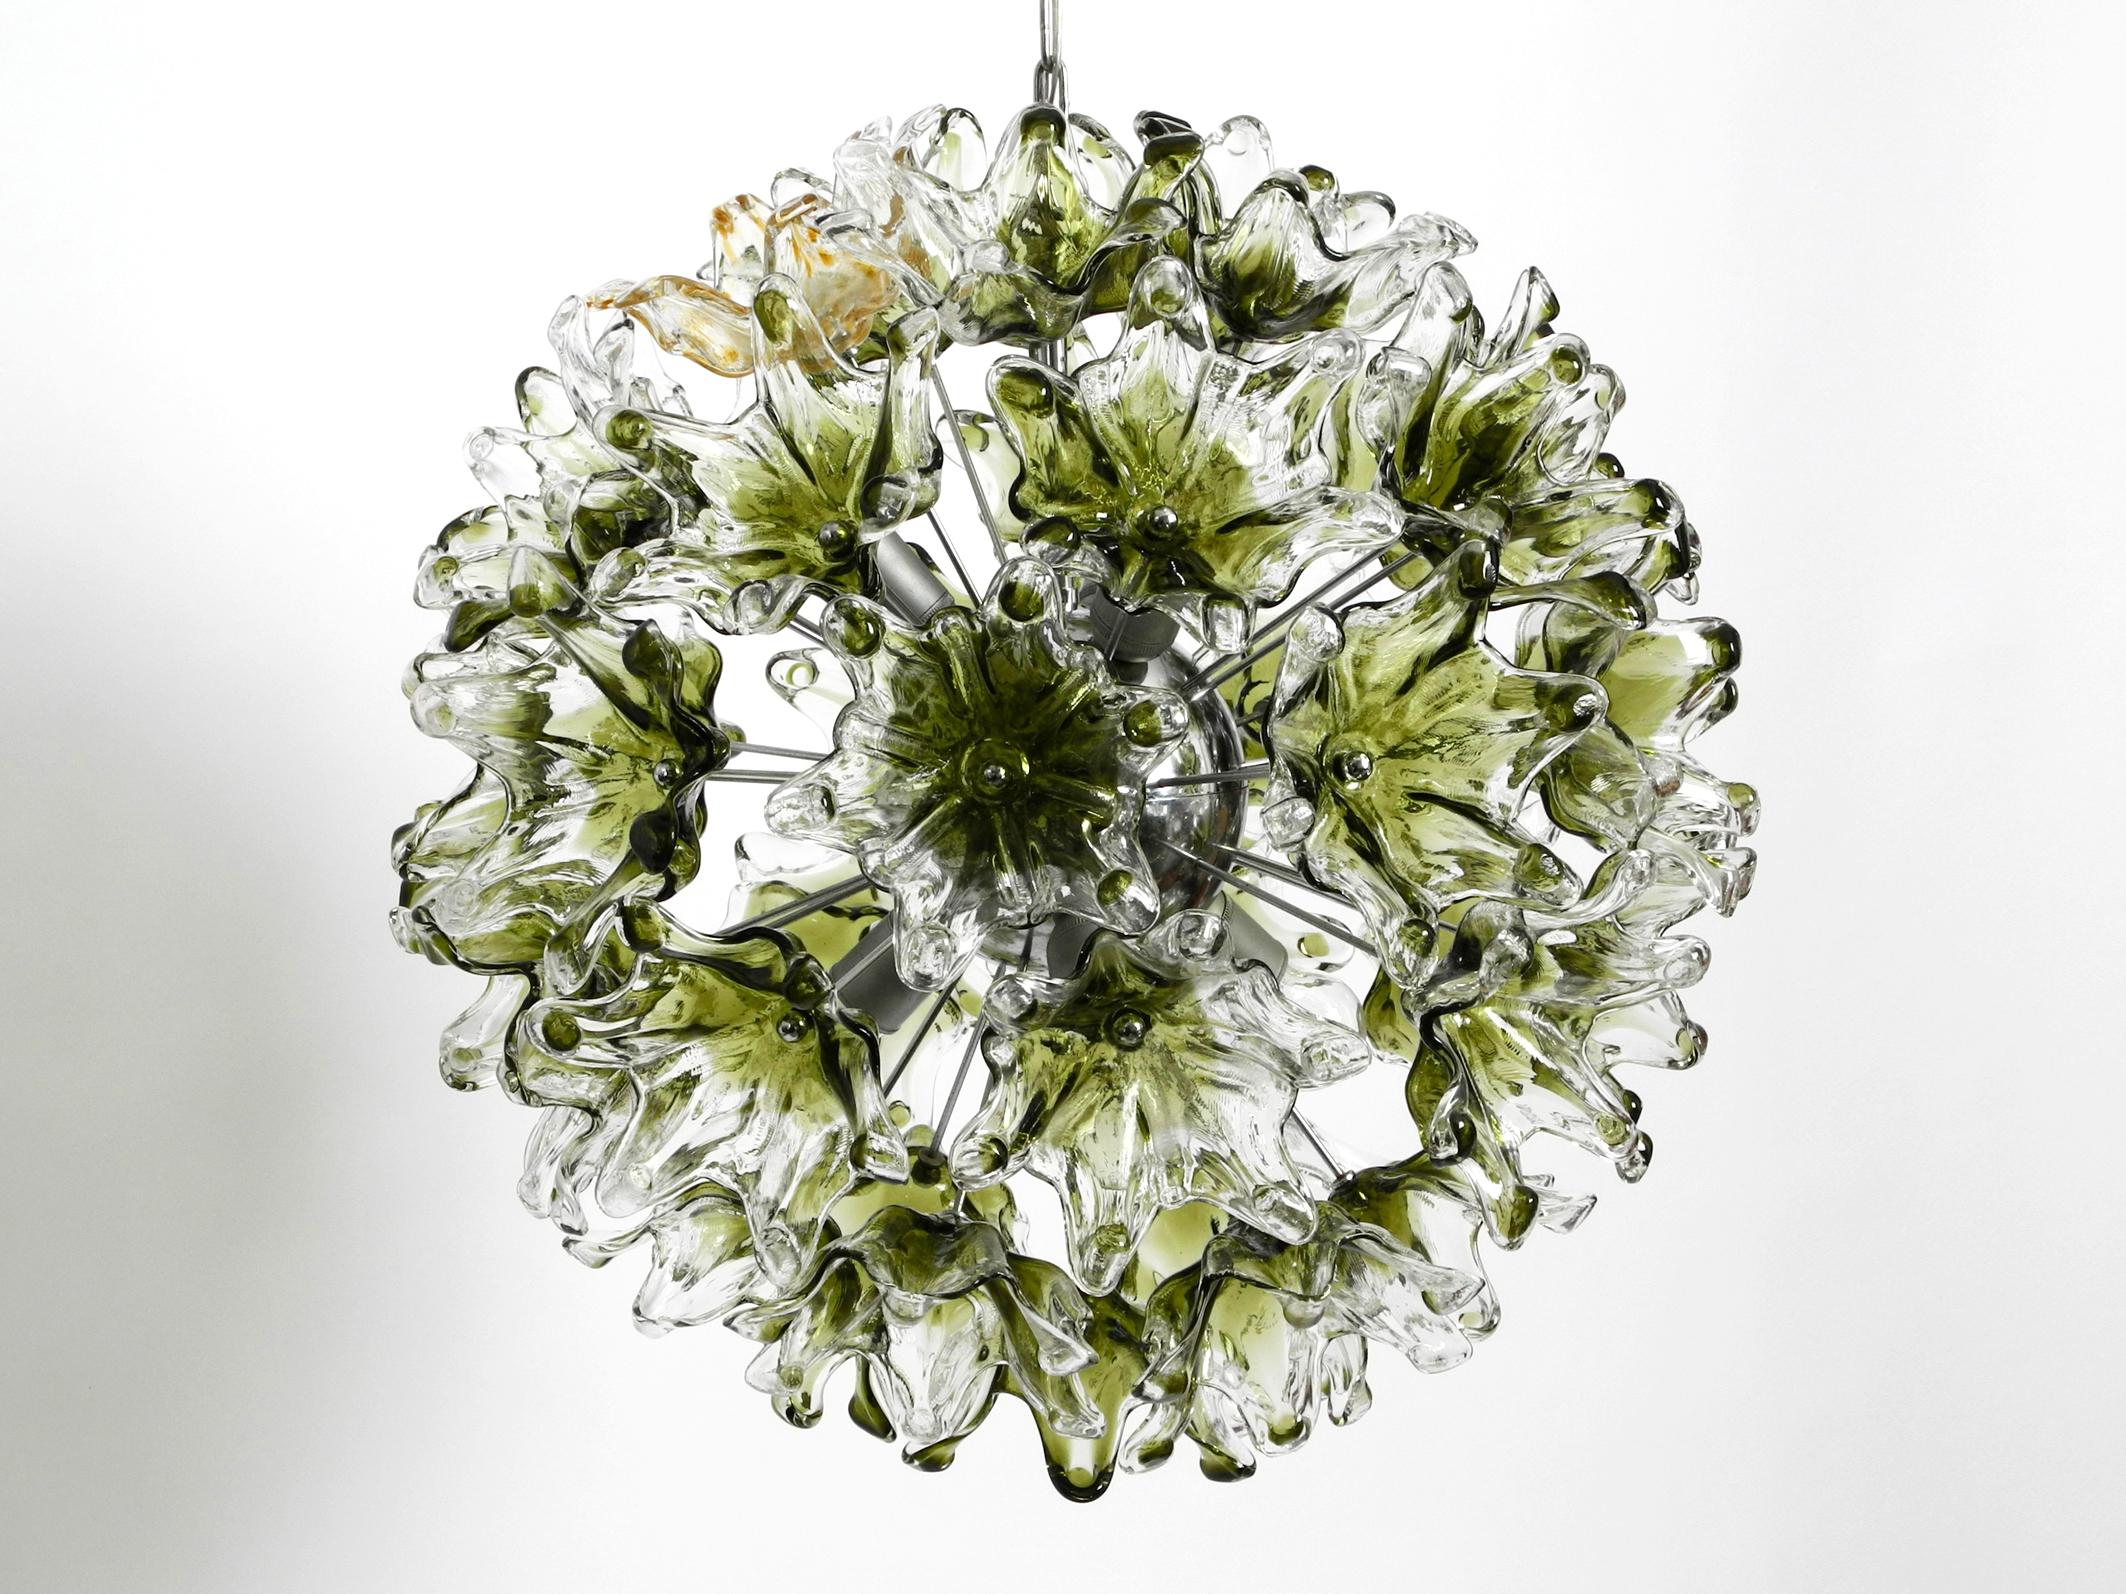 Unique, très rare, énorme lampe suspendue ou lustre original des années 1960.
Fabriqué par VeArt. Fabriquées en Italie.
Cadre en métal chromé avec un verre soufflé vert teinté à la main.
Abat-jour en verre de Murano en forme de fleurs.
Très haute